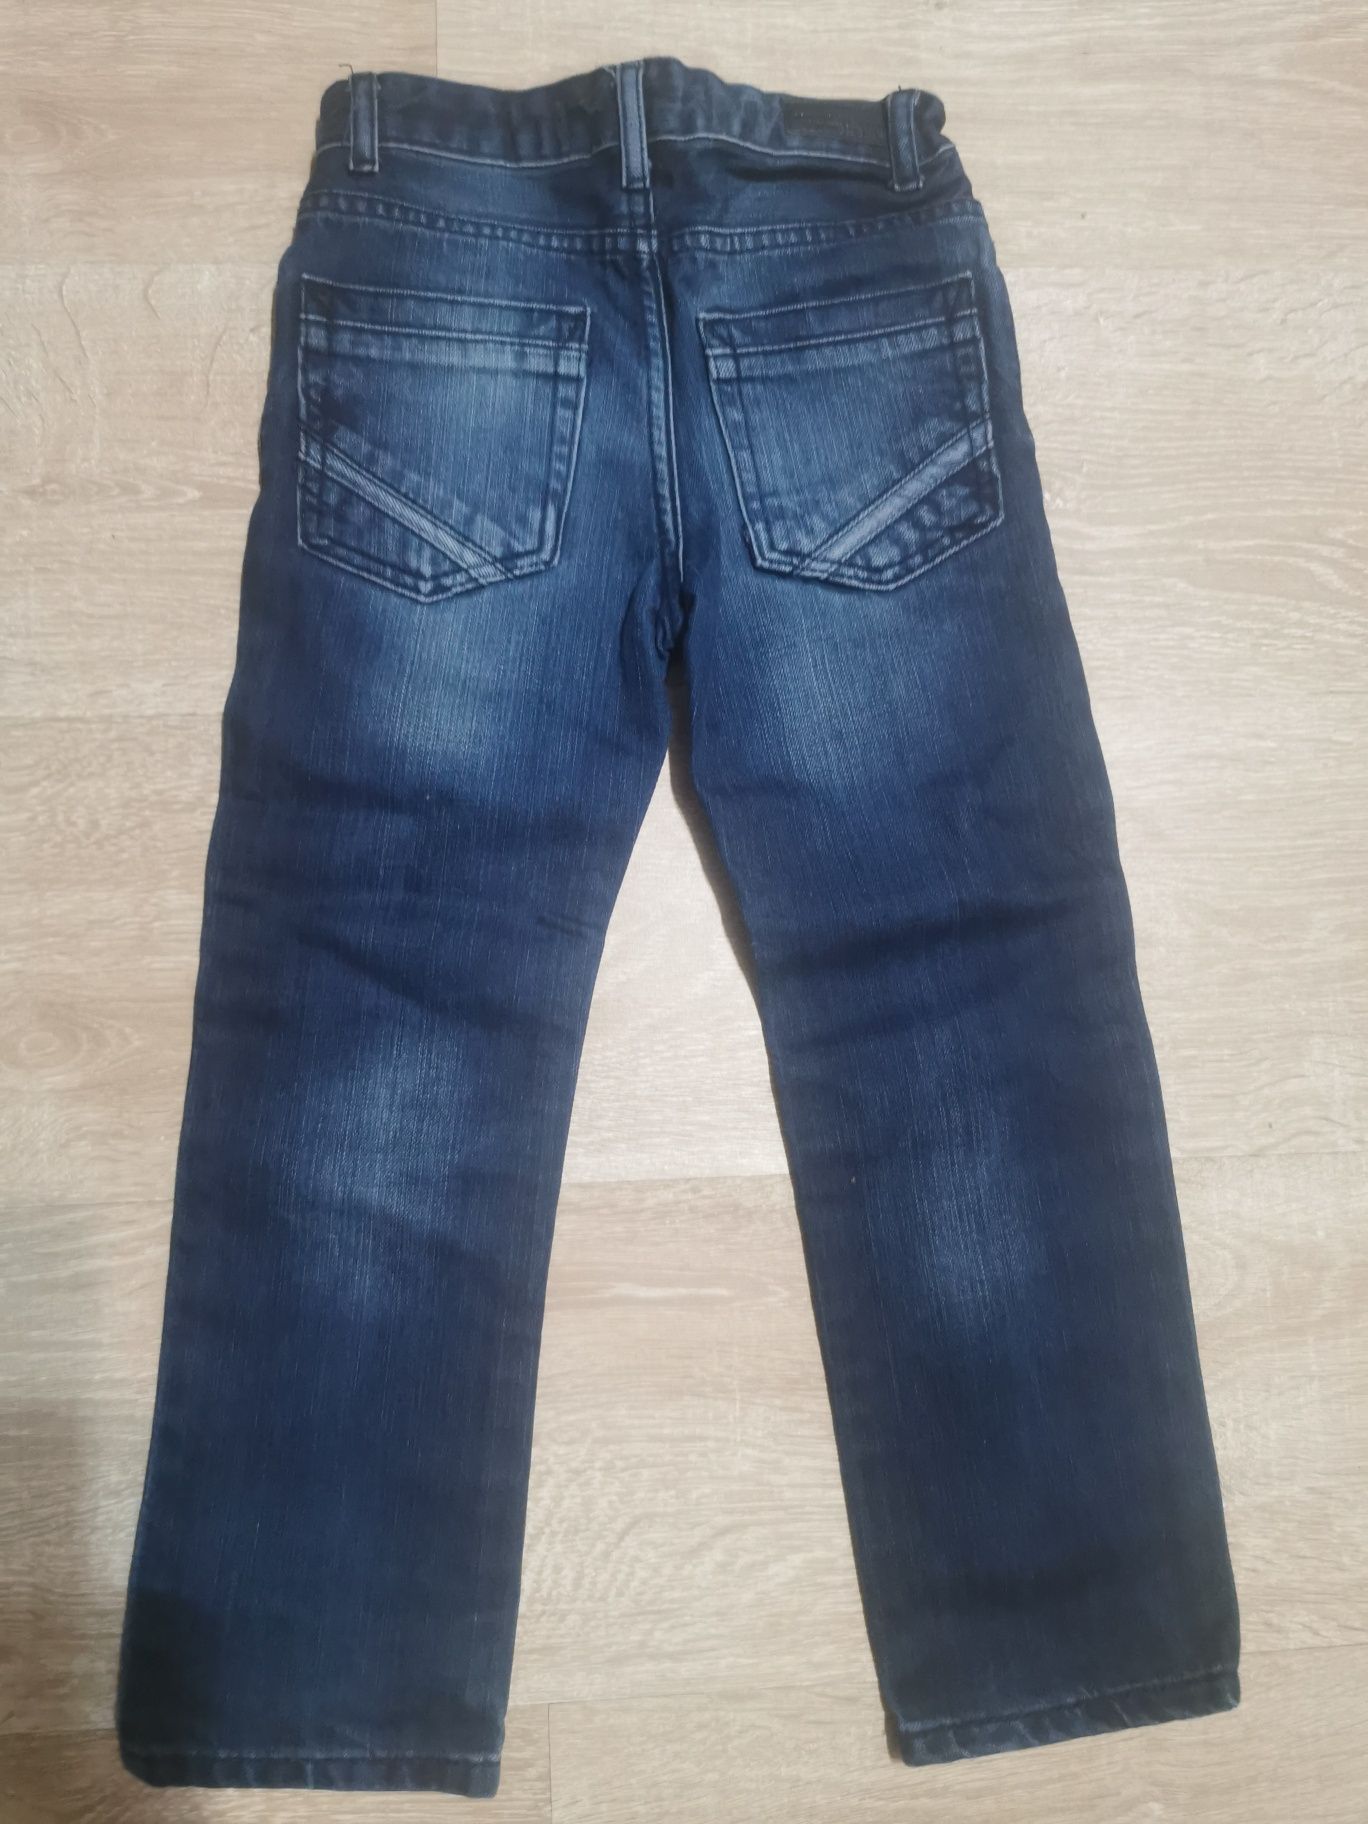 Pantaloni blugi pt copii 5-6 ani 110/ 116 cm waikiki